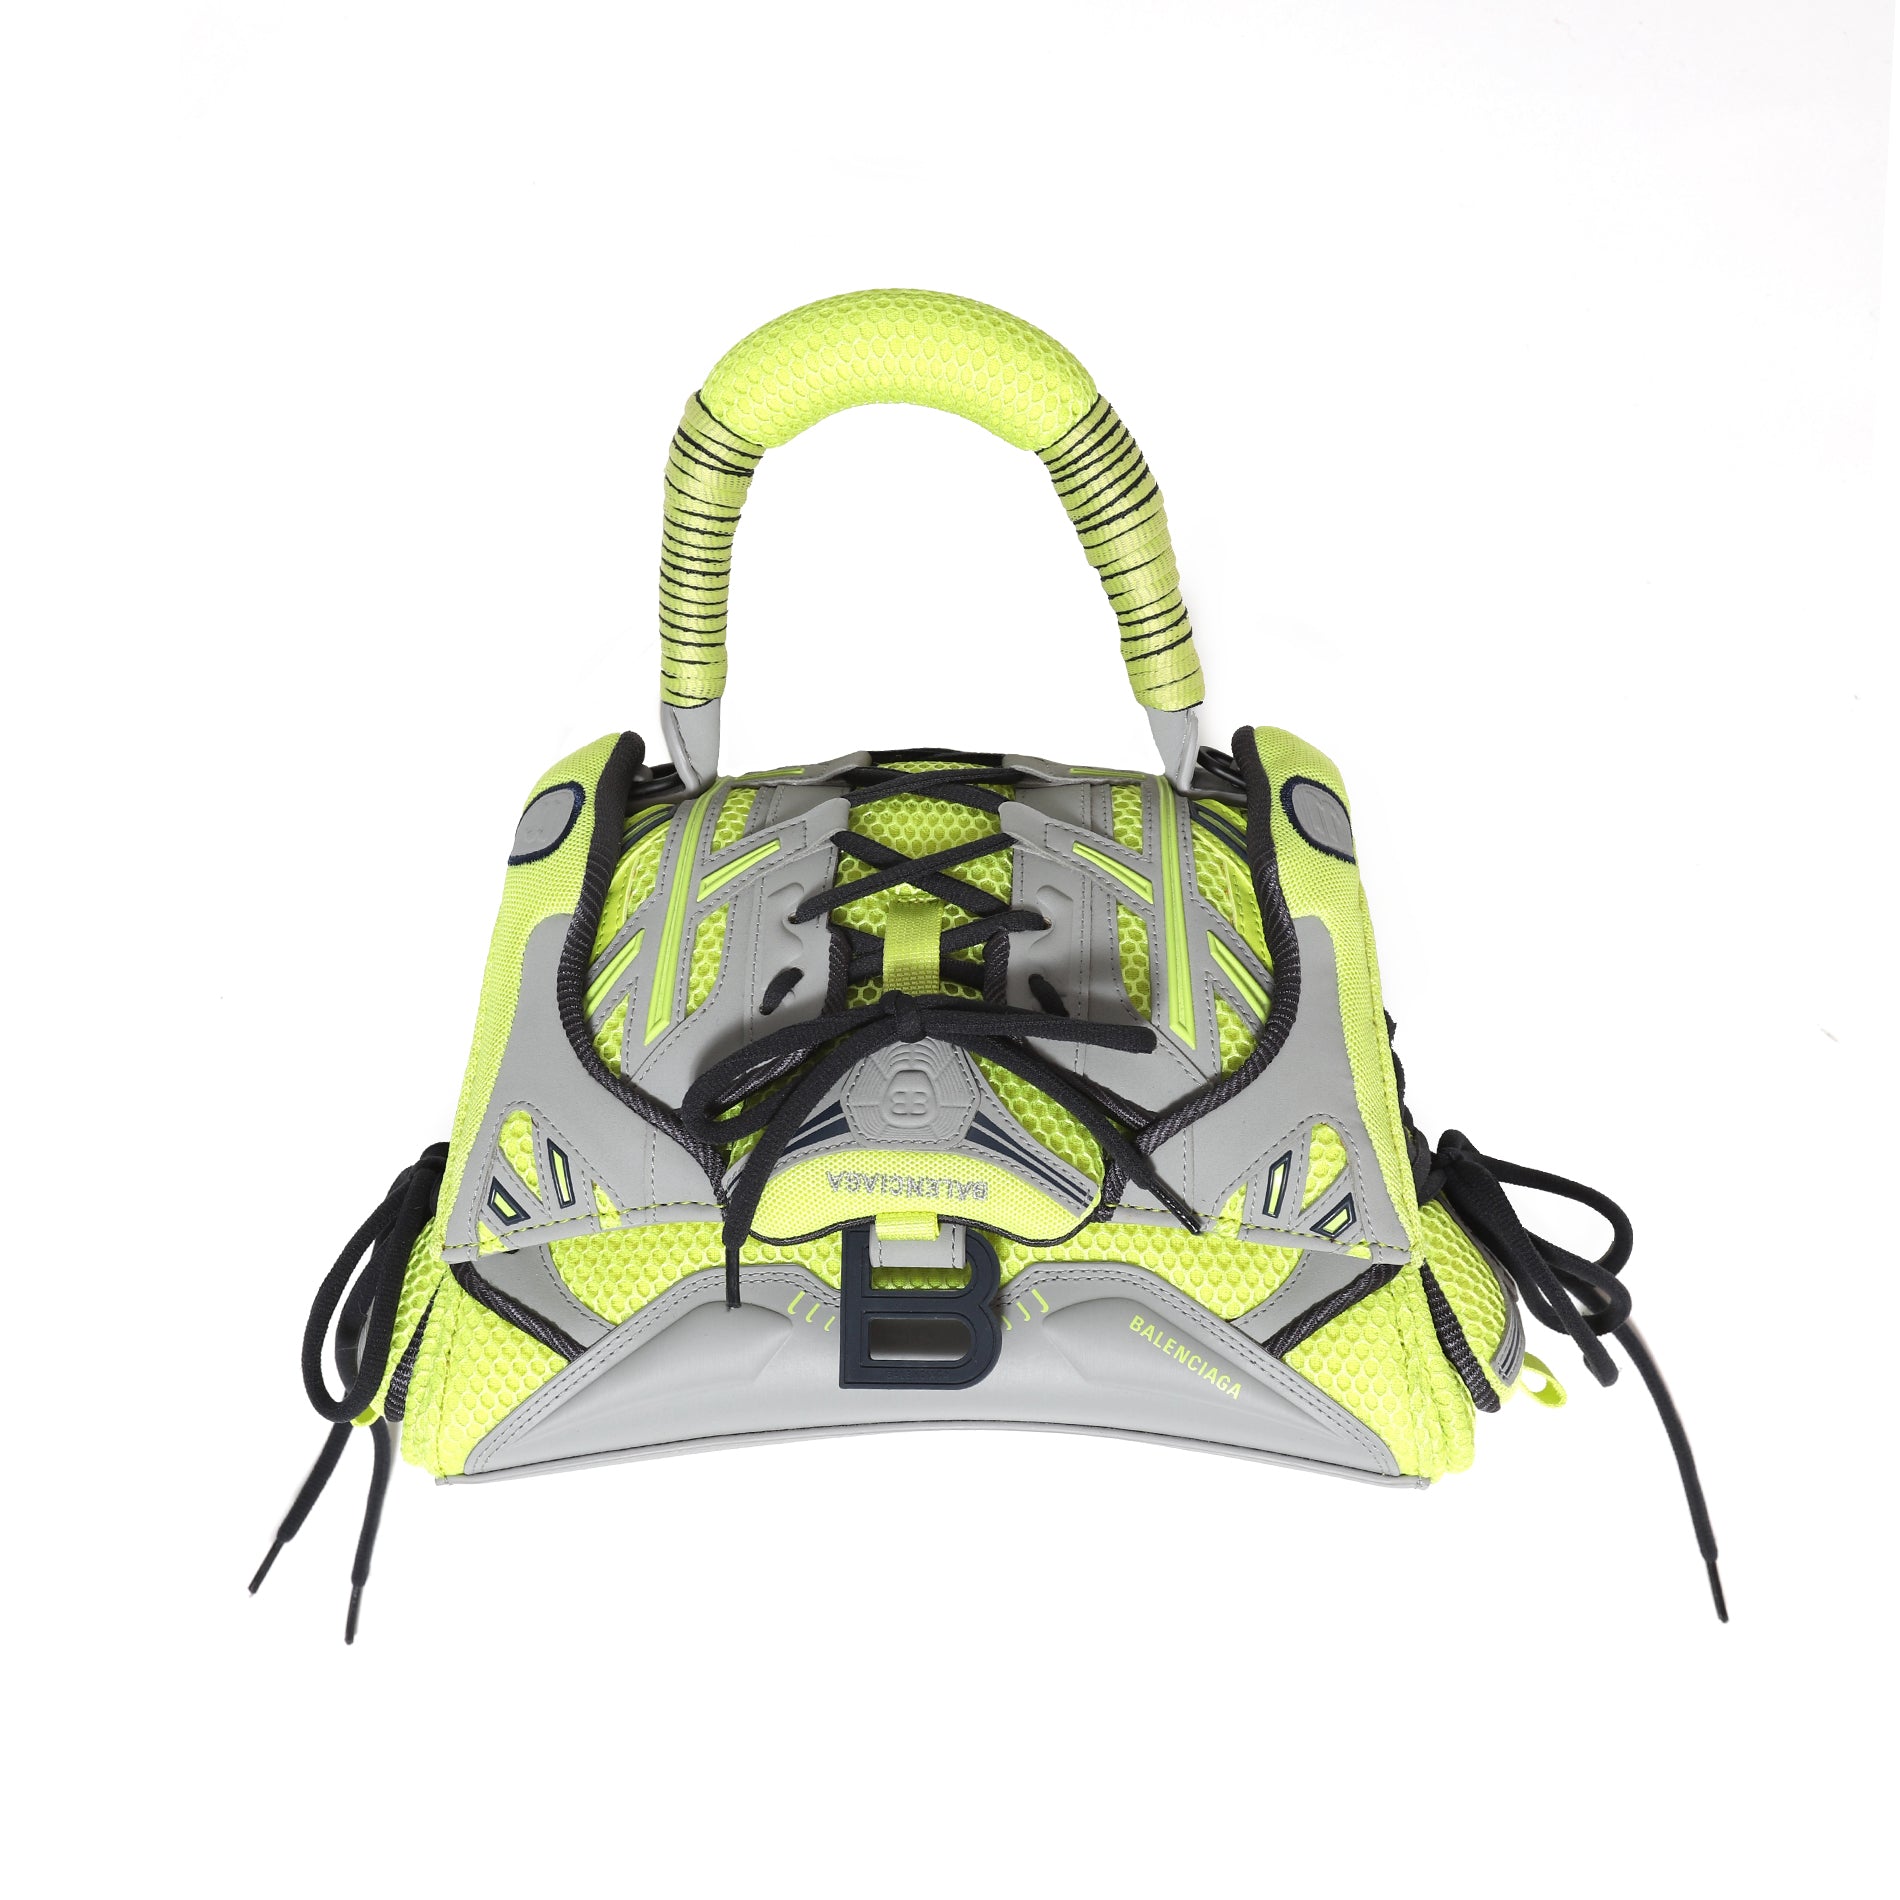 Balenciaga FW21 1 of 1 Prototype Lime Green Sneakerhead Bag